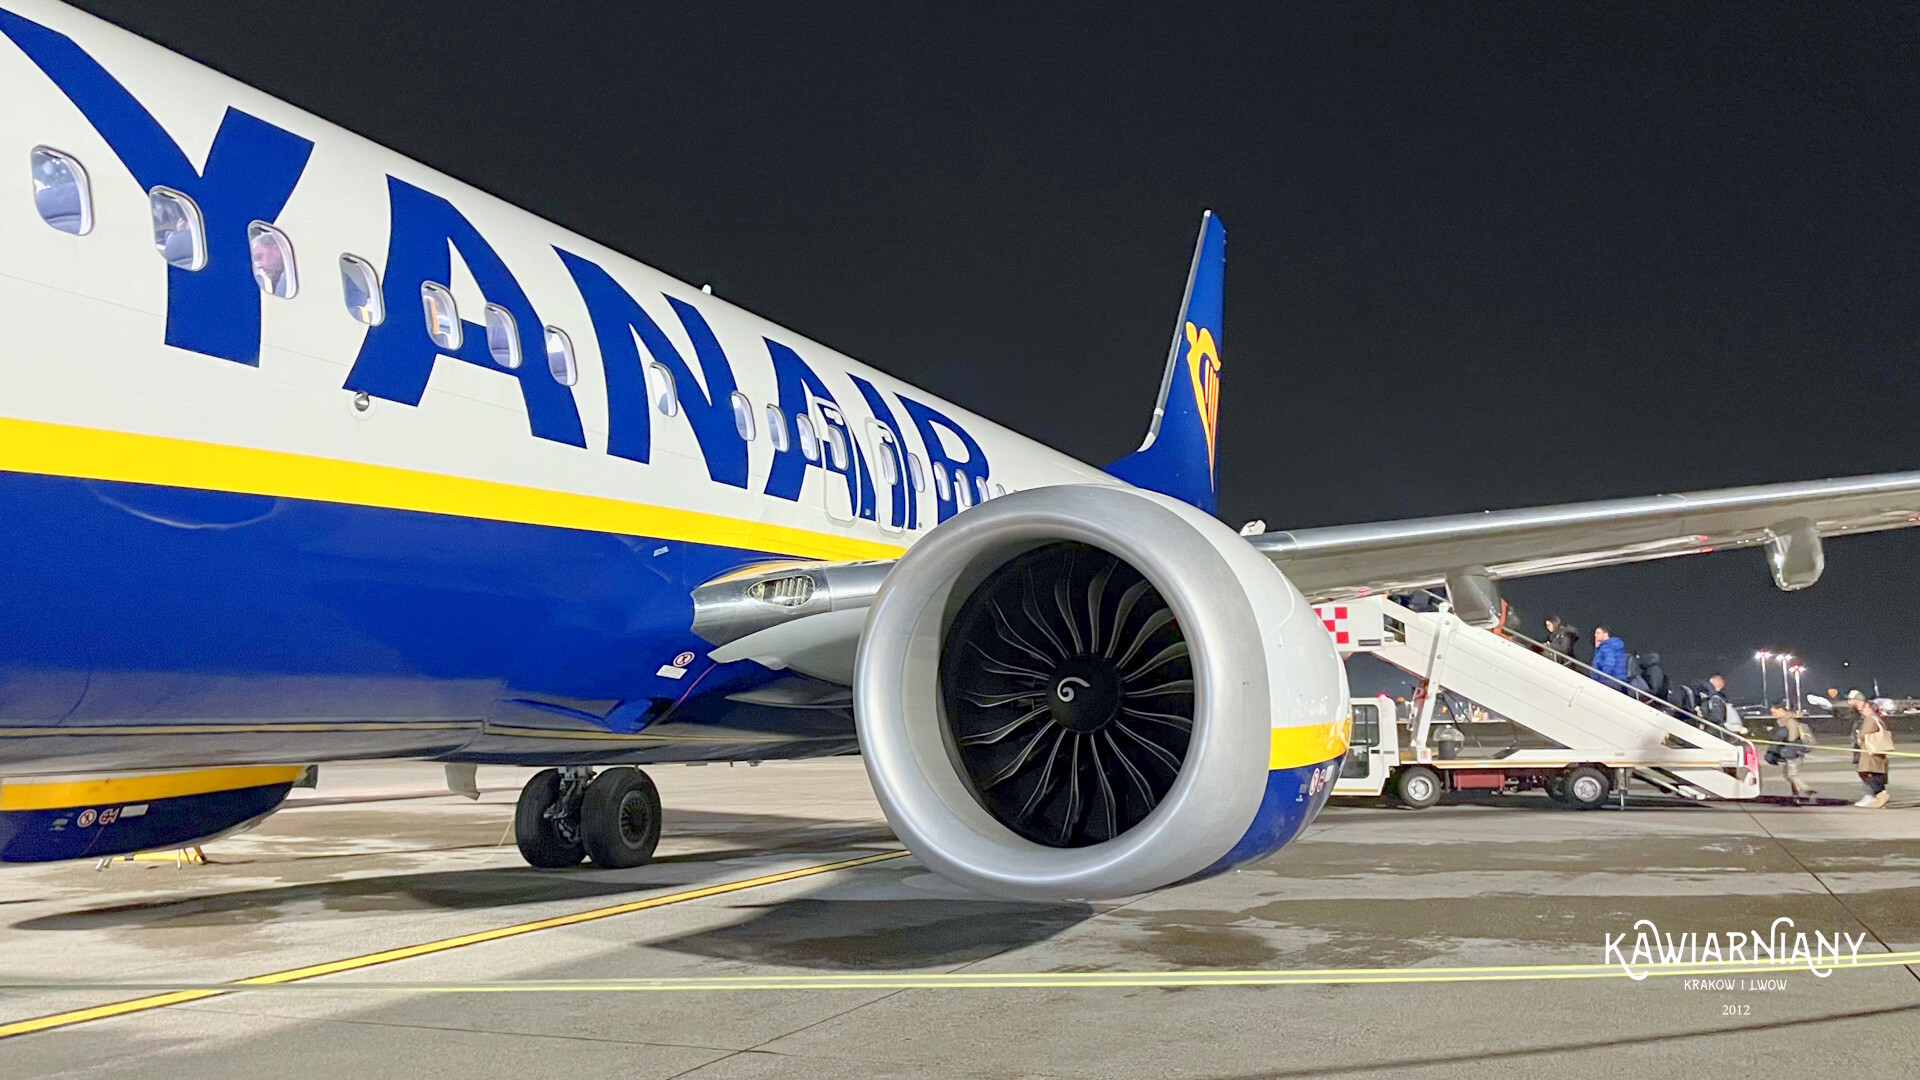 Ryanair jaki bagaż podręczny? Bagaż podręczny wymiary